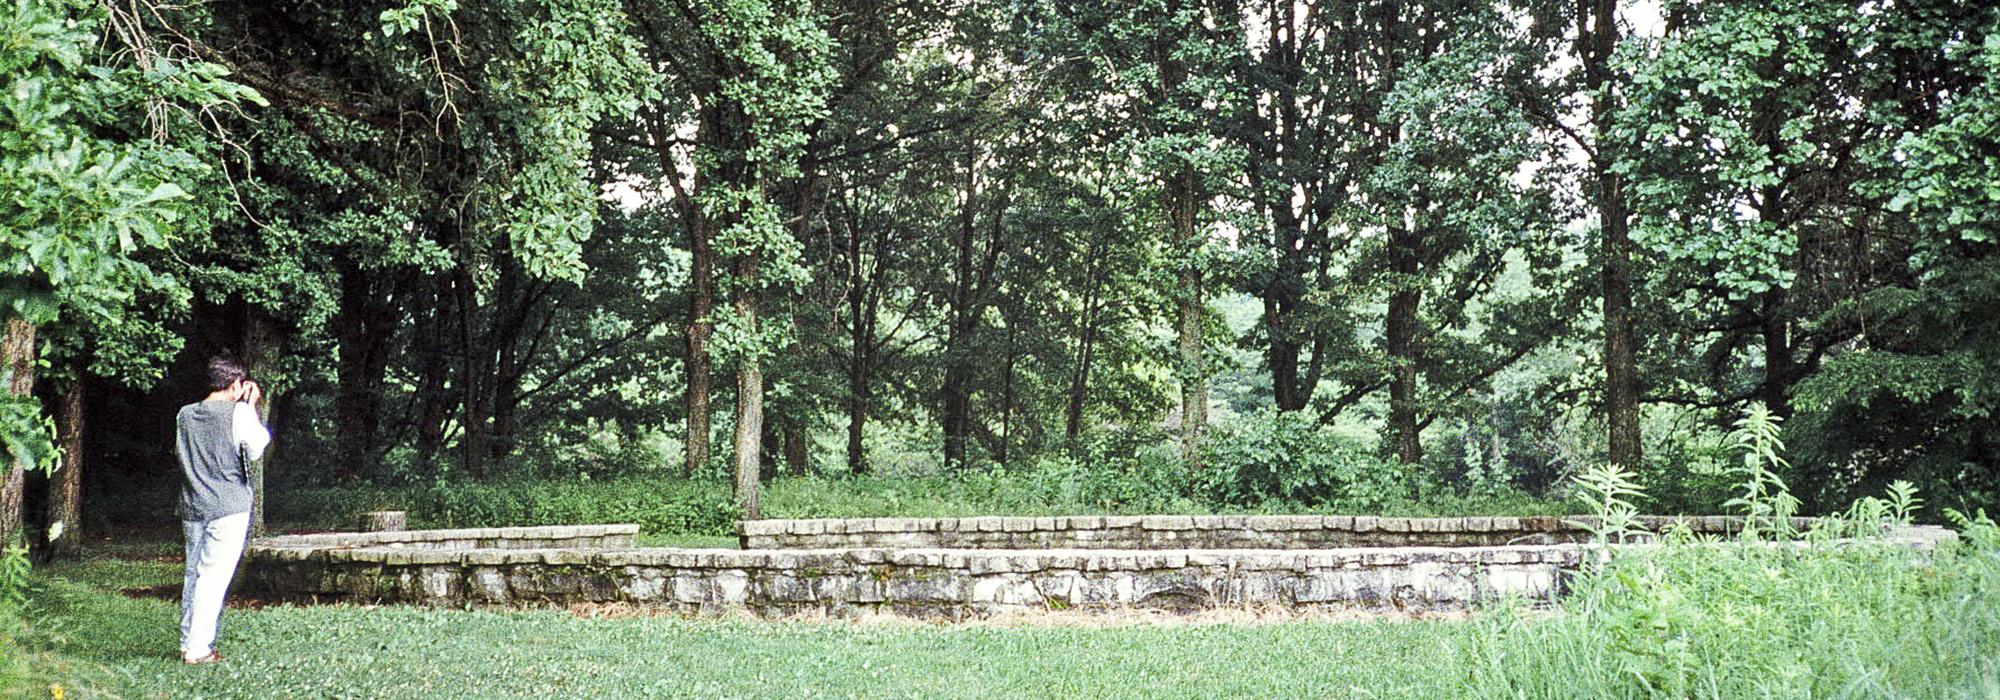 Lincoln Memorial Garden, Springfield, IL